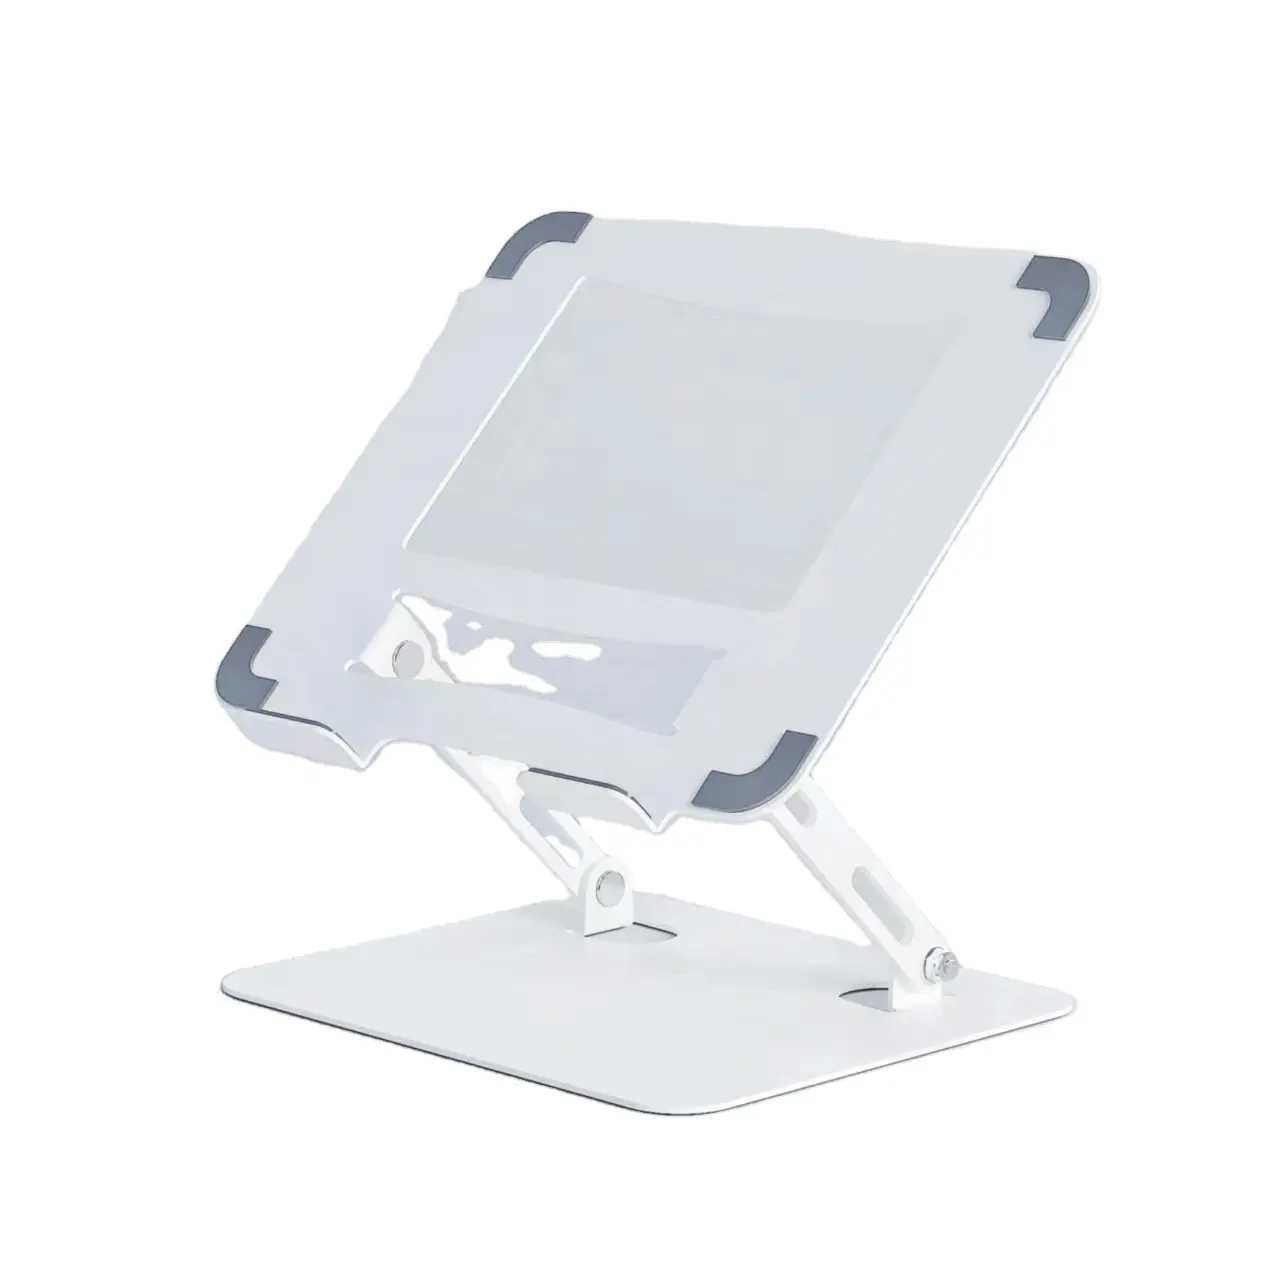 Soporte para portátil plegable de escritorio ajustable en altura estirable de metal multifuncional